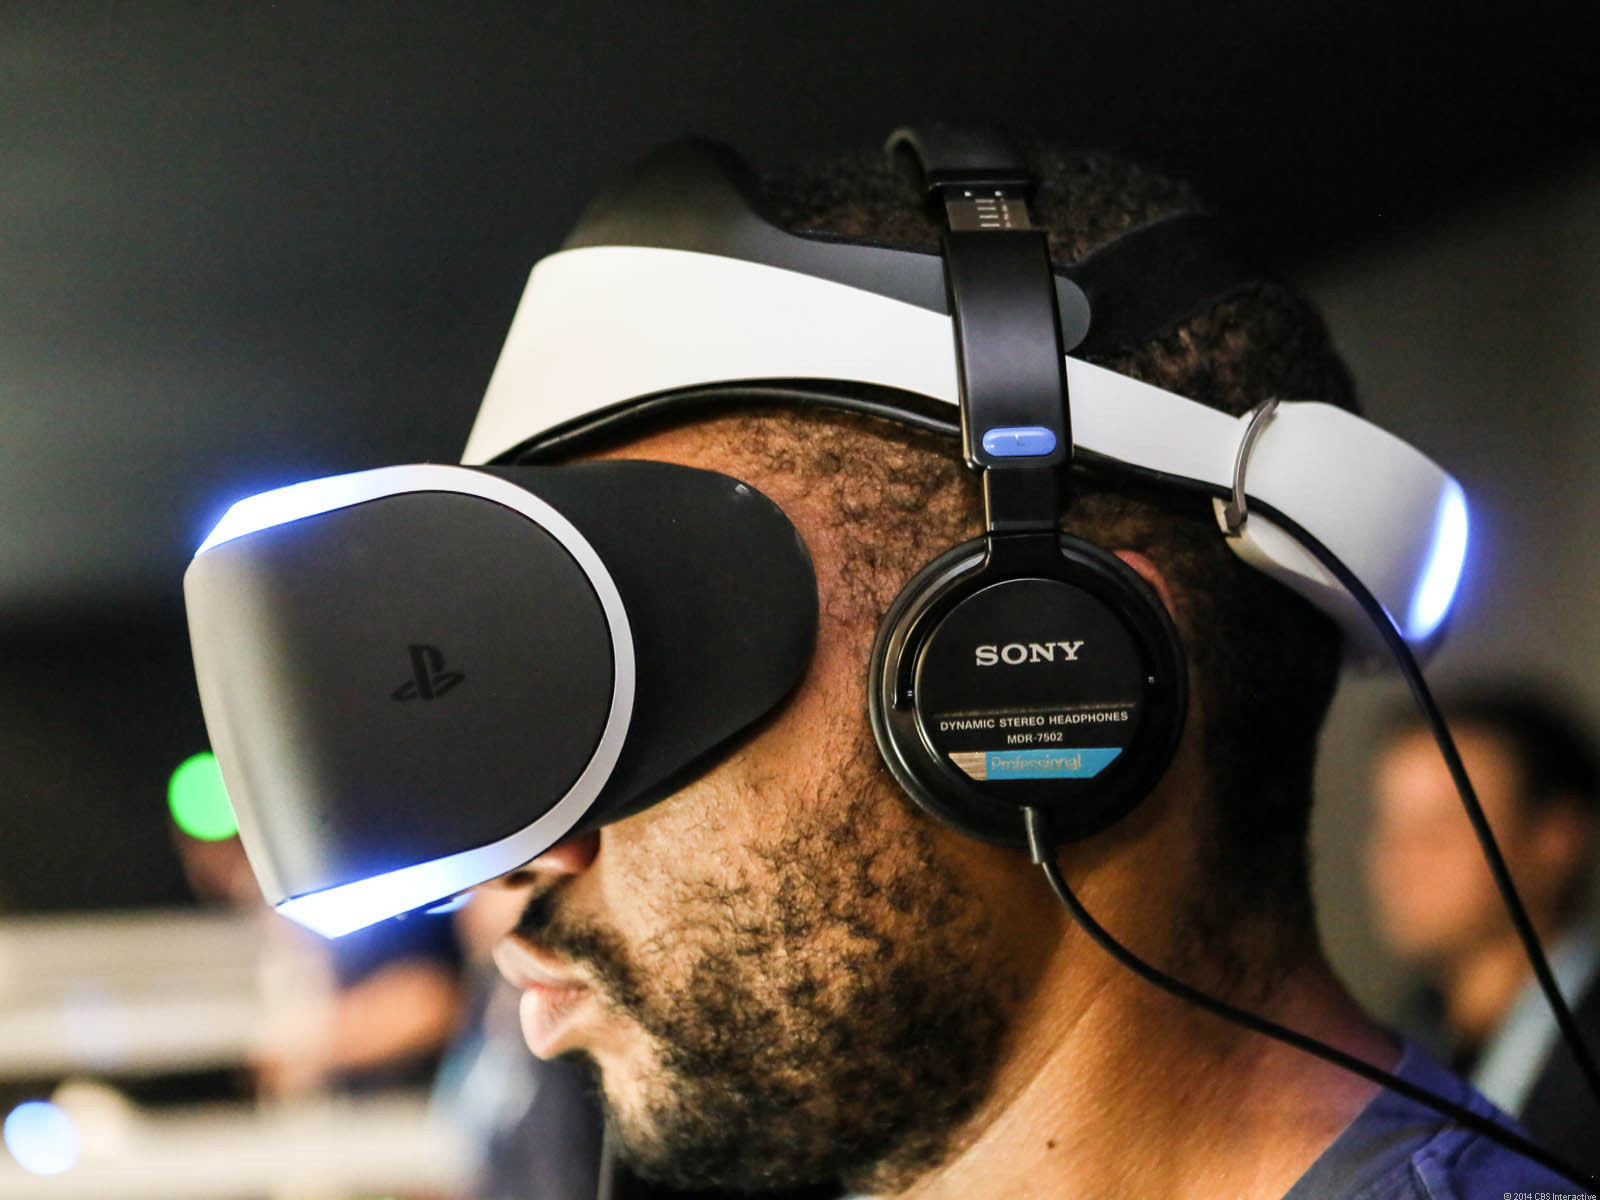 Especialistas apontam o alto preço da tecnologia e a falta de conteúdo como os principais desafios para o VR.